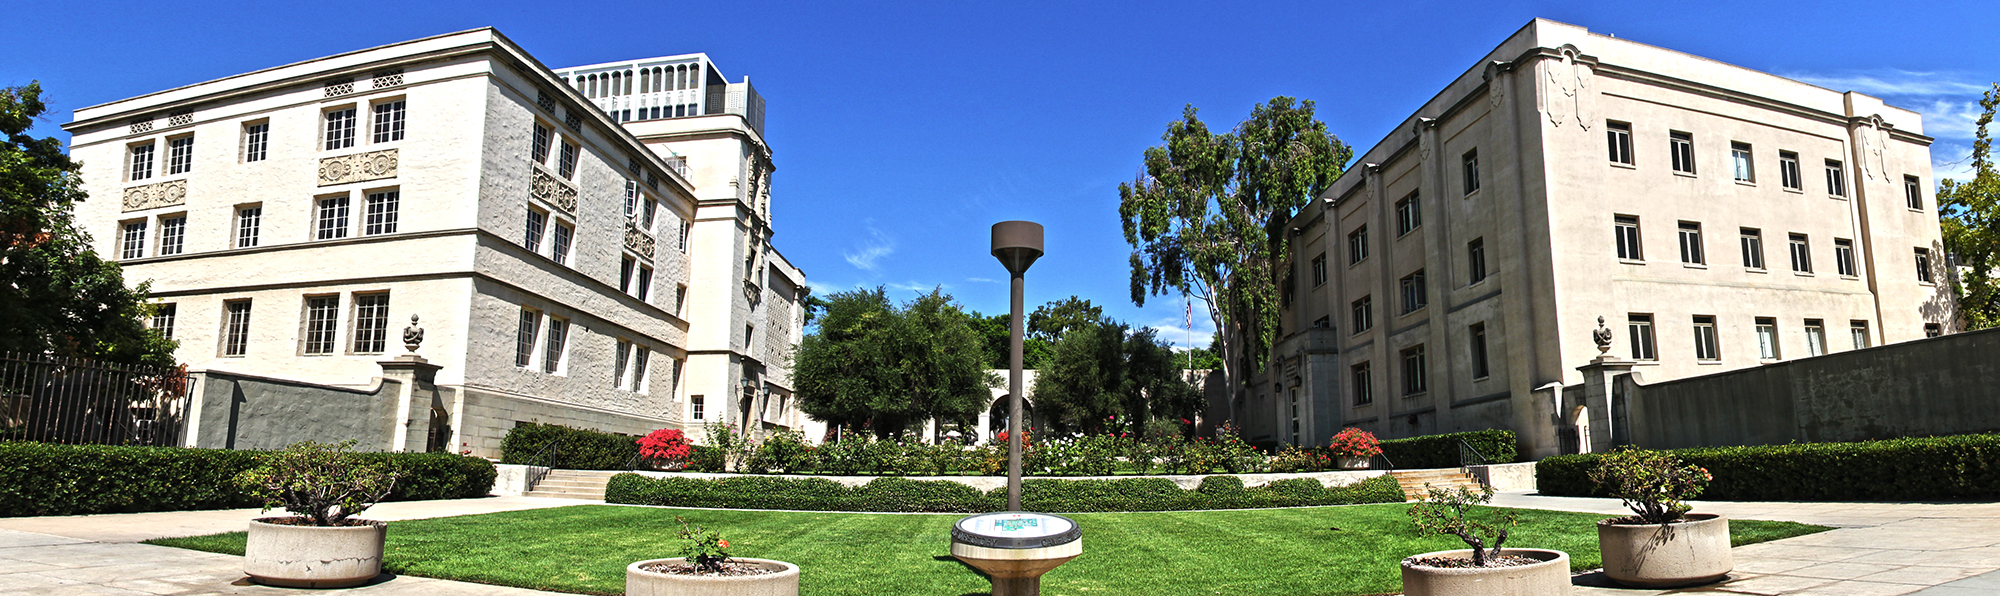 The Cal Tech entrance